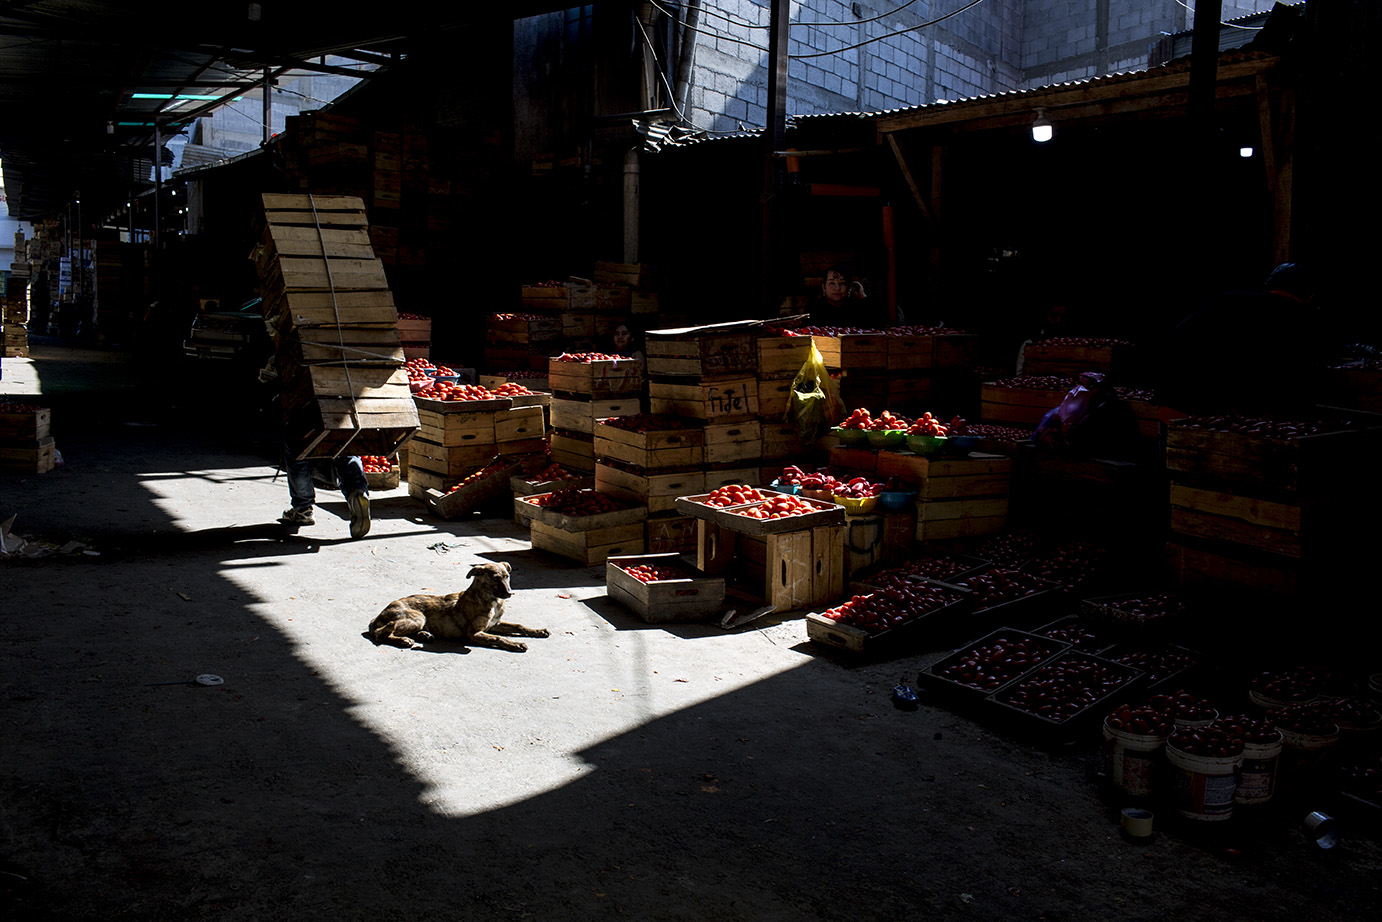 La Tomatera, en el mercado de la Terminal, luce desolada el miércoles 18 de marzo. El bloqueo del transporte público disminuyó enormemente la afluencia de clientes, a pesar de la disponibilidad de producto a vender. Simone Dalmasso